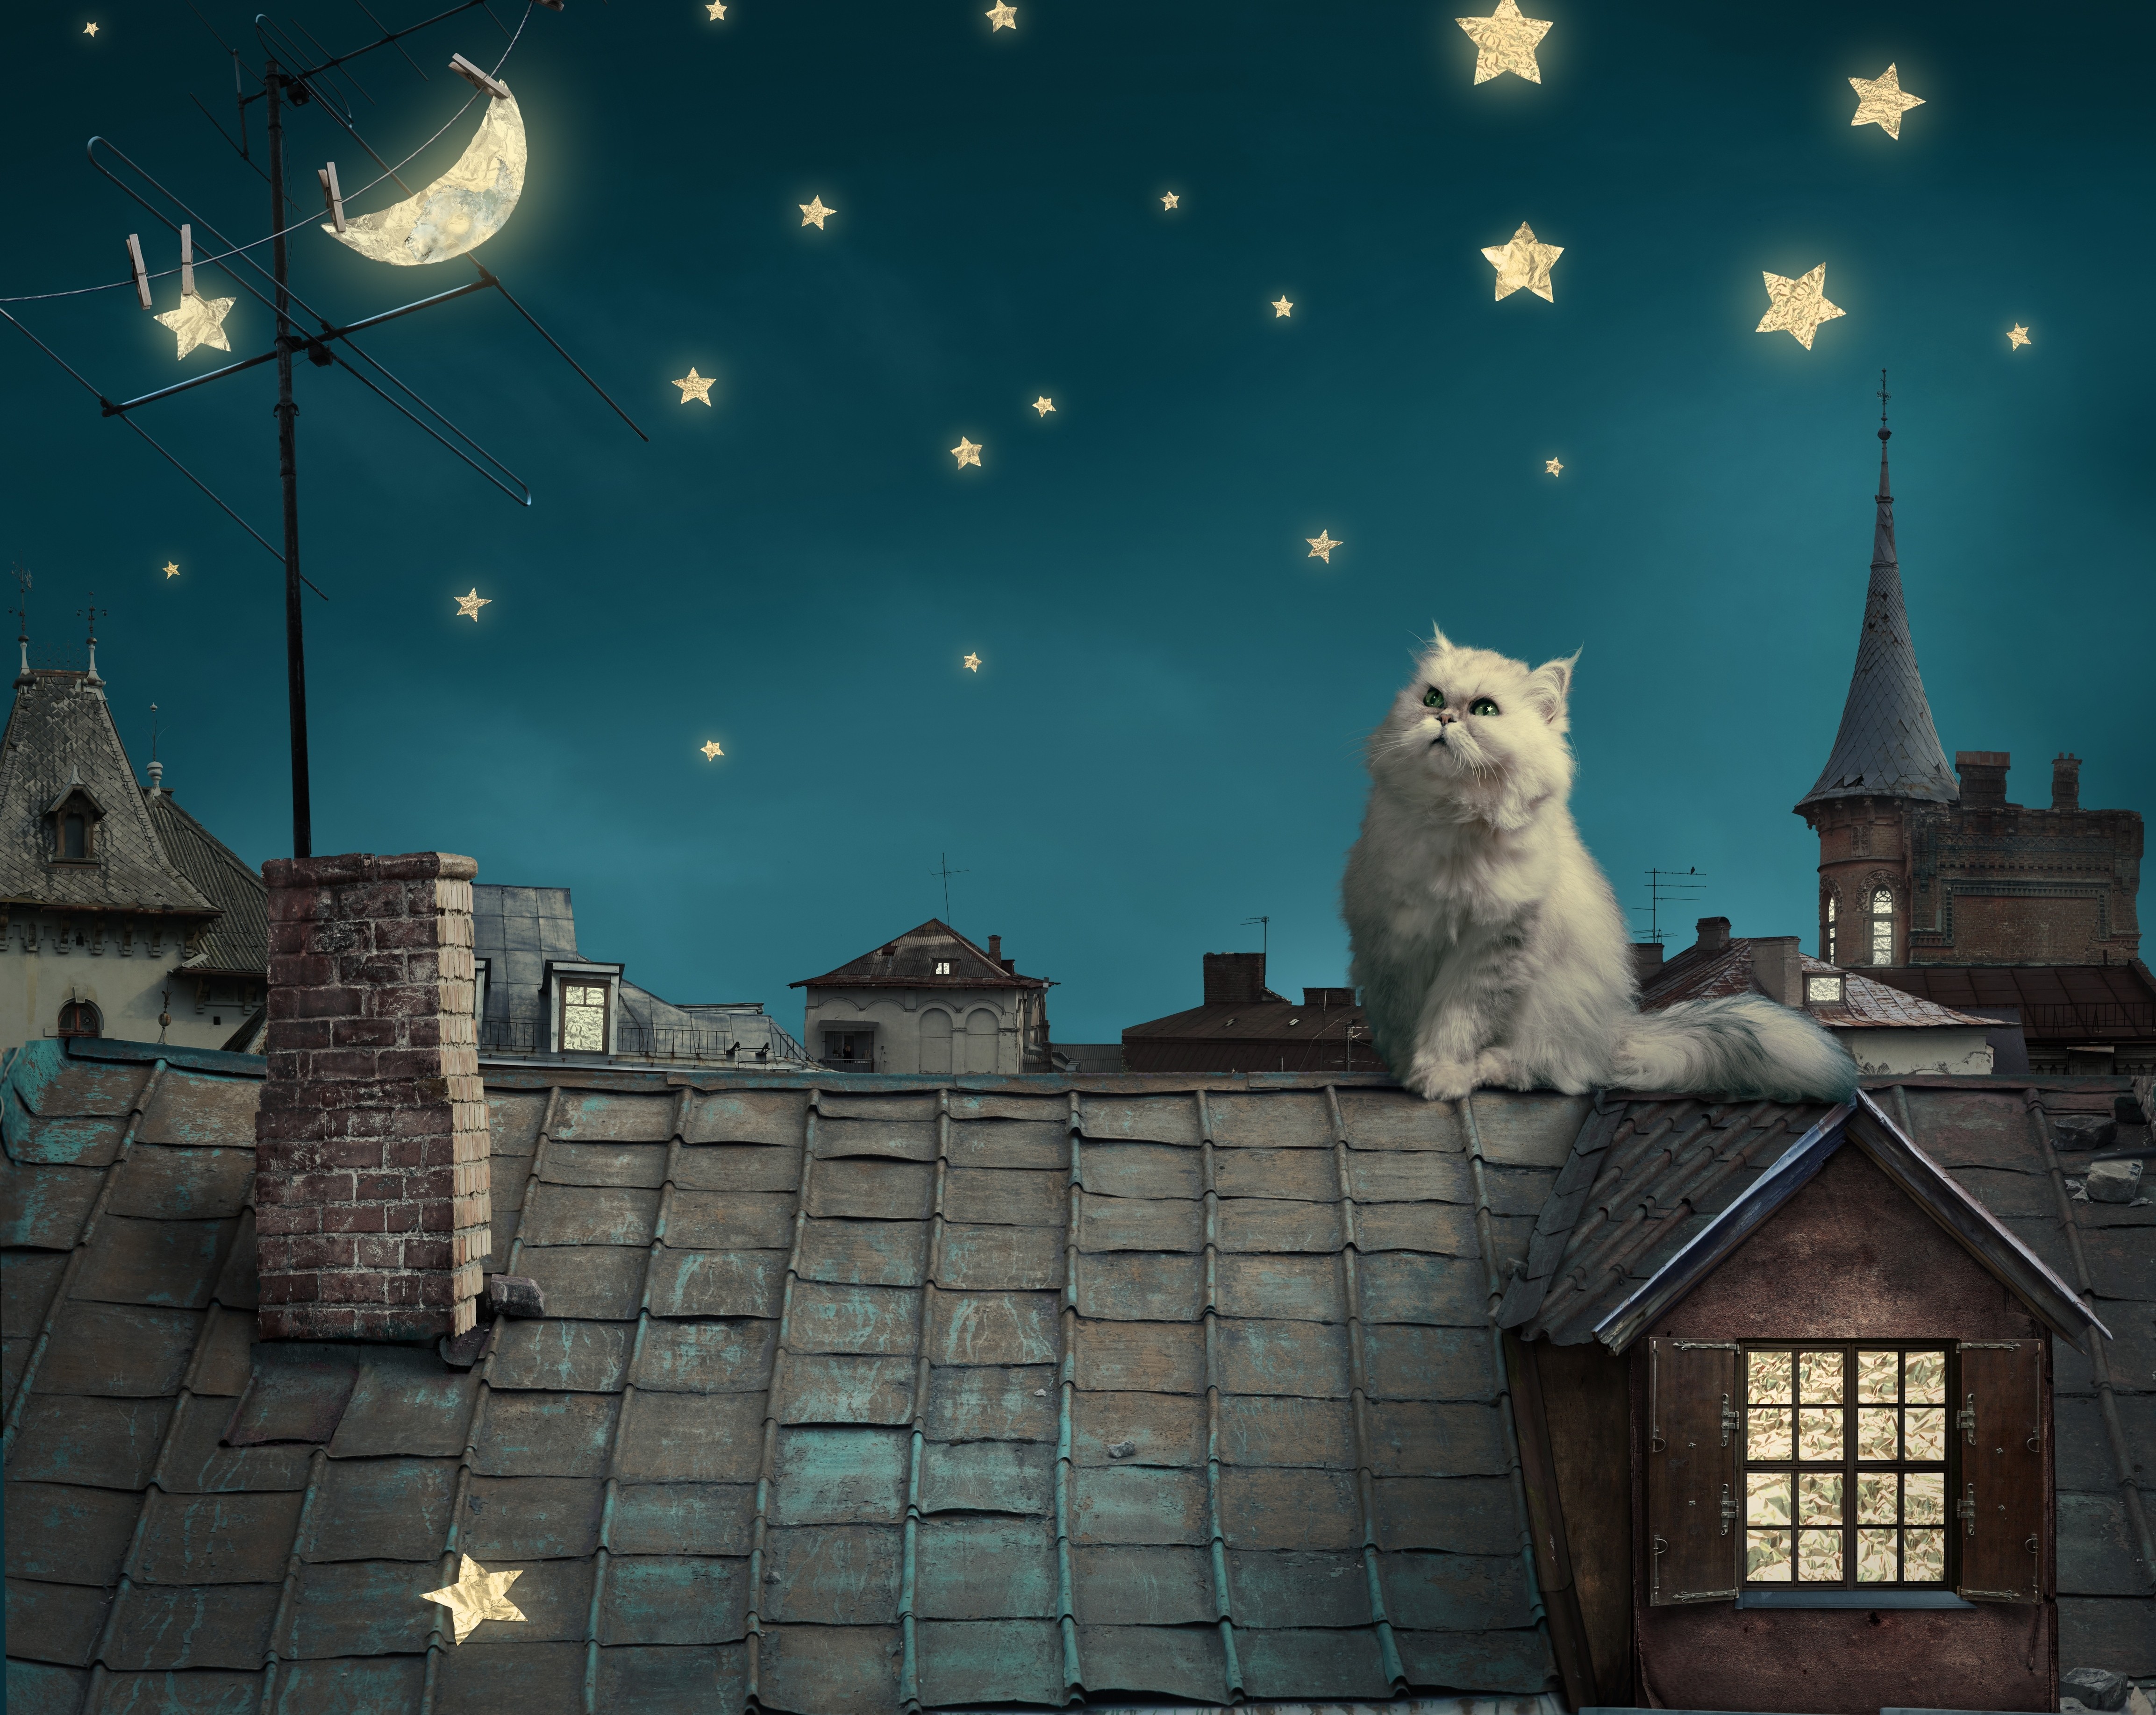 Animals Cats Stars Moon Crescent Moon House Rooftops Digital Art Persian Cat 4614x3671